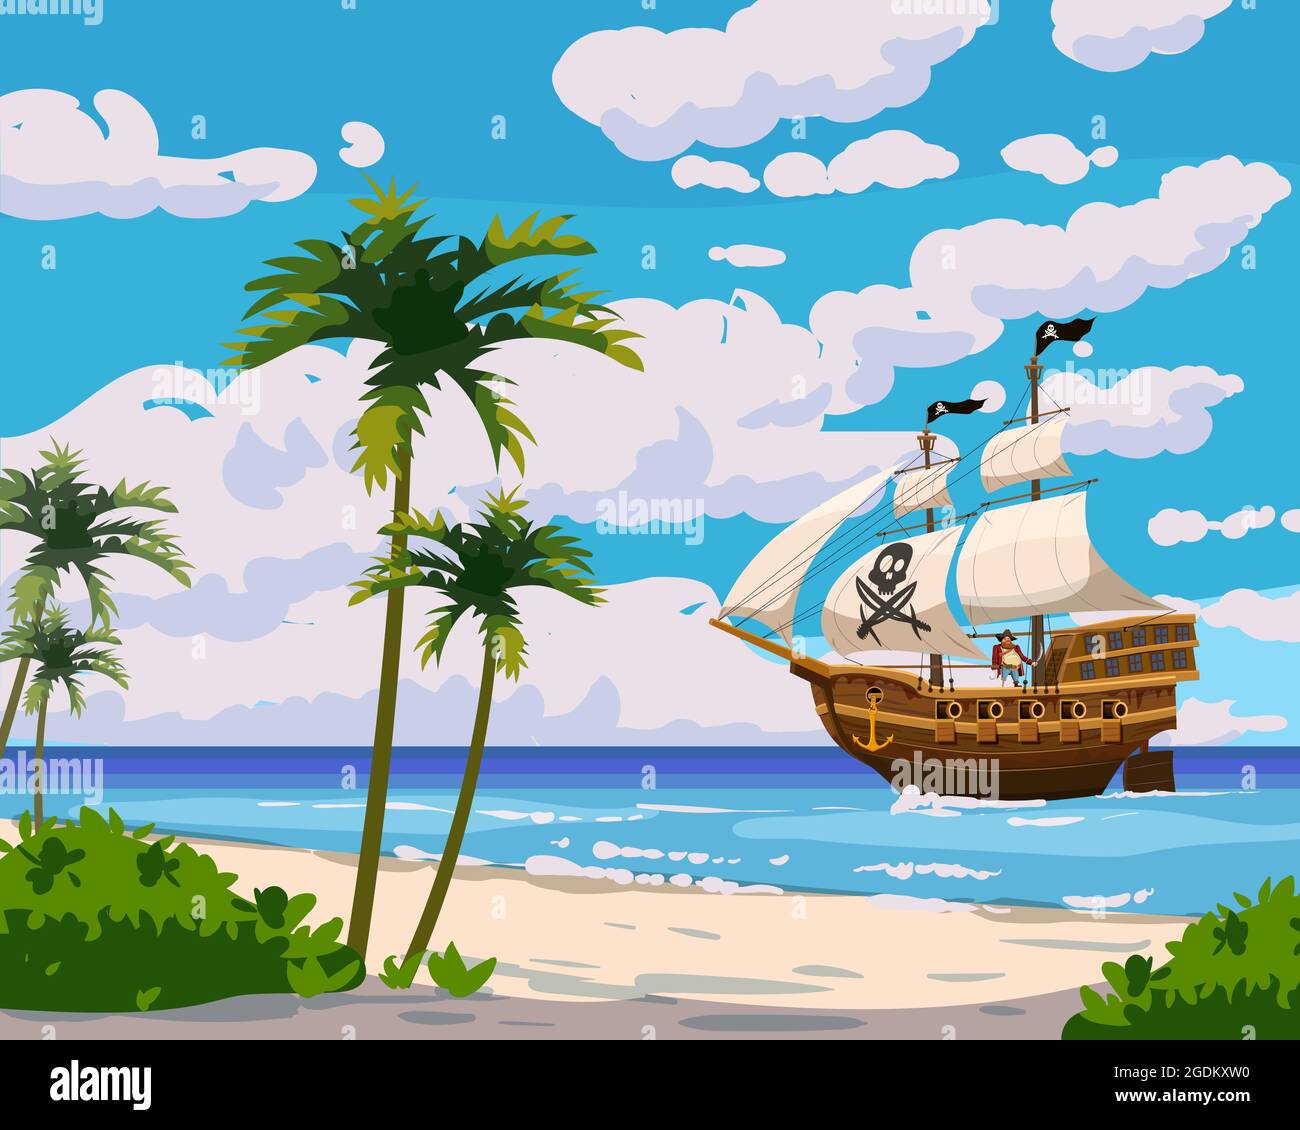 Tropical Island Piratenschiff unter Segel im Ozean, tropische Schätze,  Palmen. Meereslandschaft Küste, Strand, Sand, Abenteuer, Spiel.  Vektorgrafik Stock-Vektorgrafik - Alamy